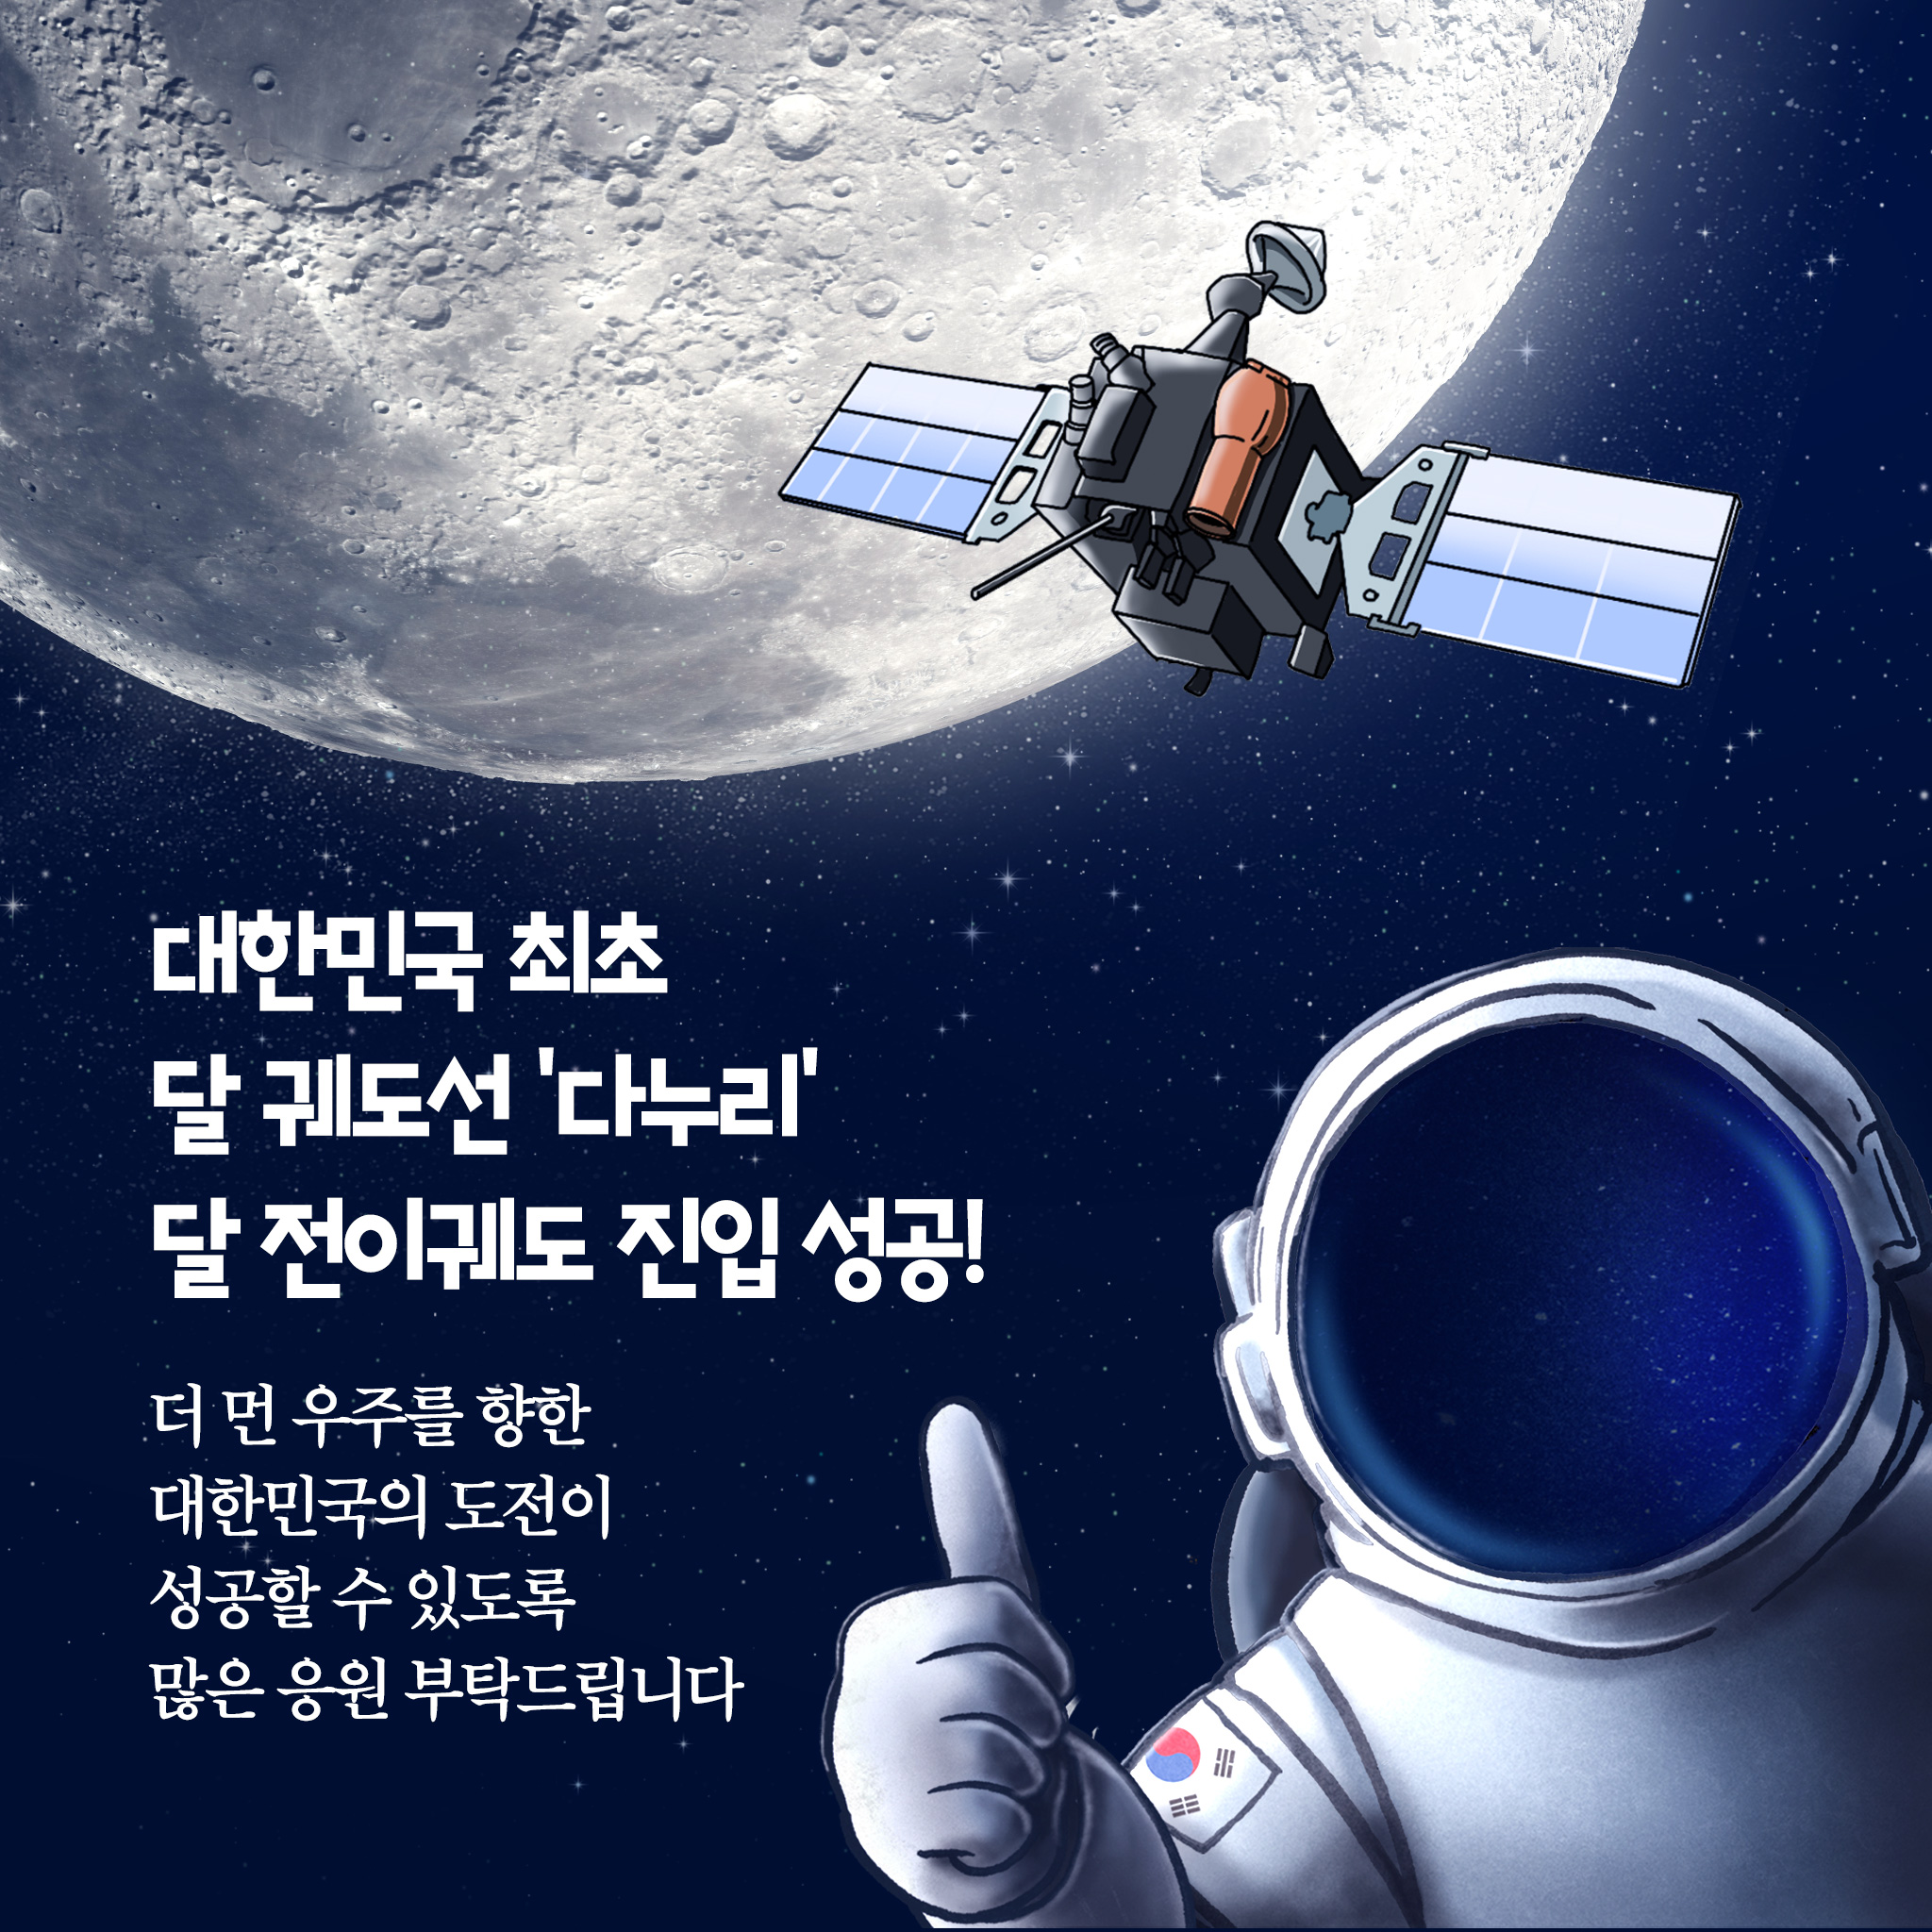 대한민국 최초 달 궤도선 '다누리', 달 전이궤도 진입 성공!